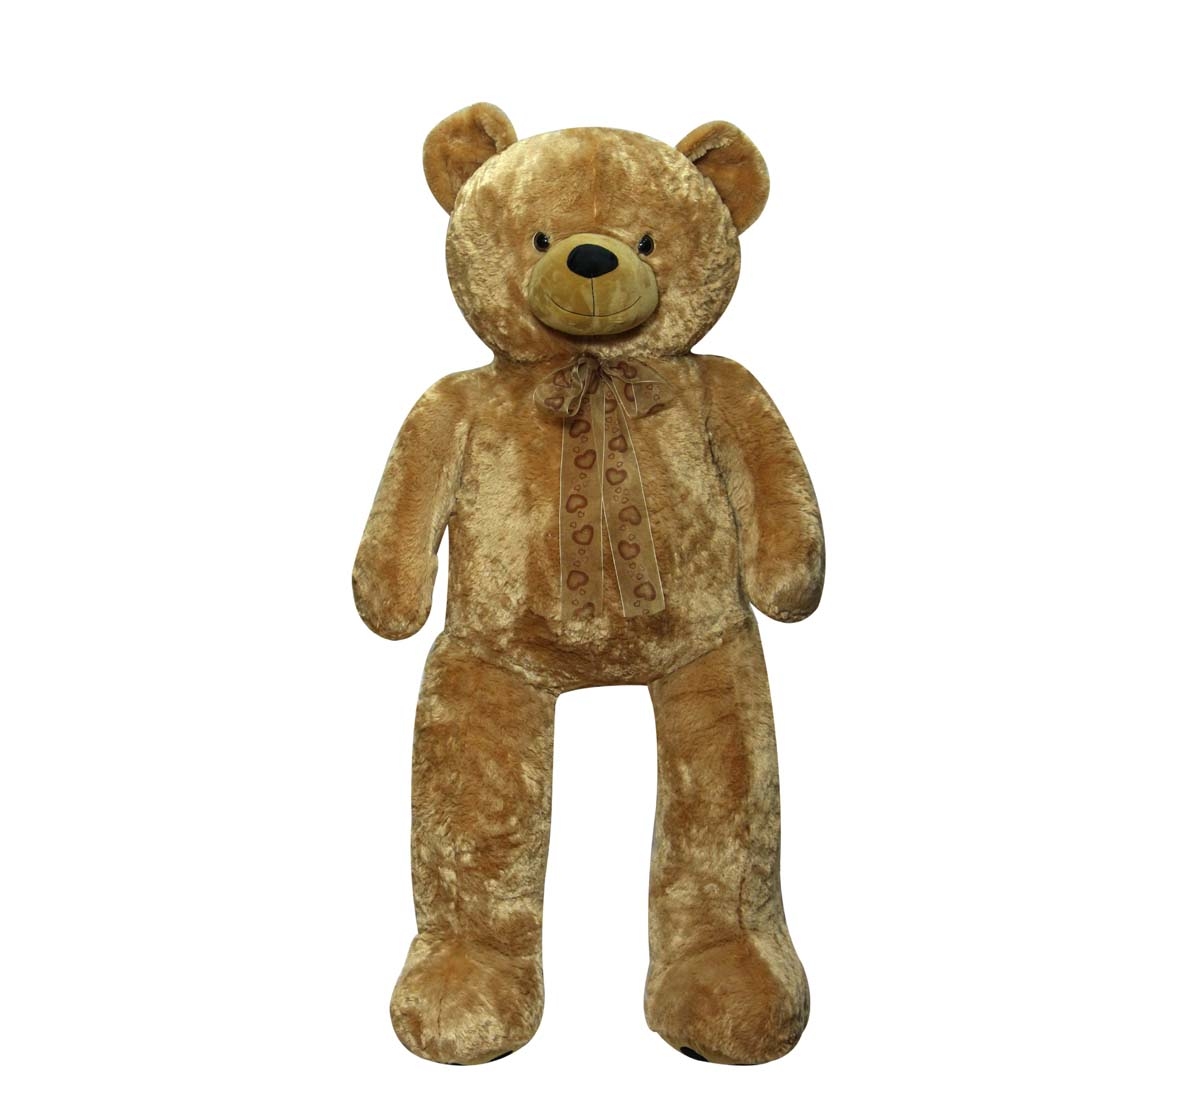 Soft Buddies | Soft Buddies Big Bear130 Cm Teddy Bears for Kids age 12M+ - 130 Cm 